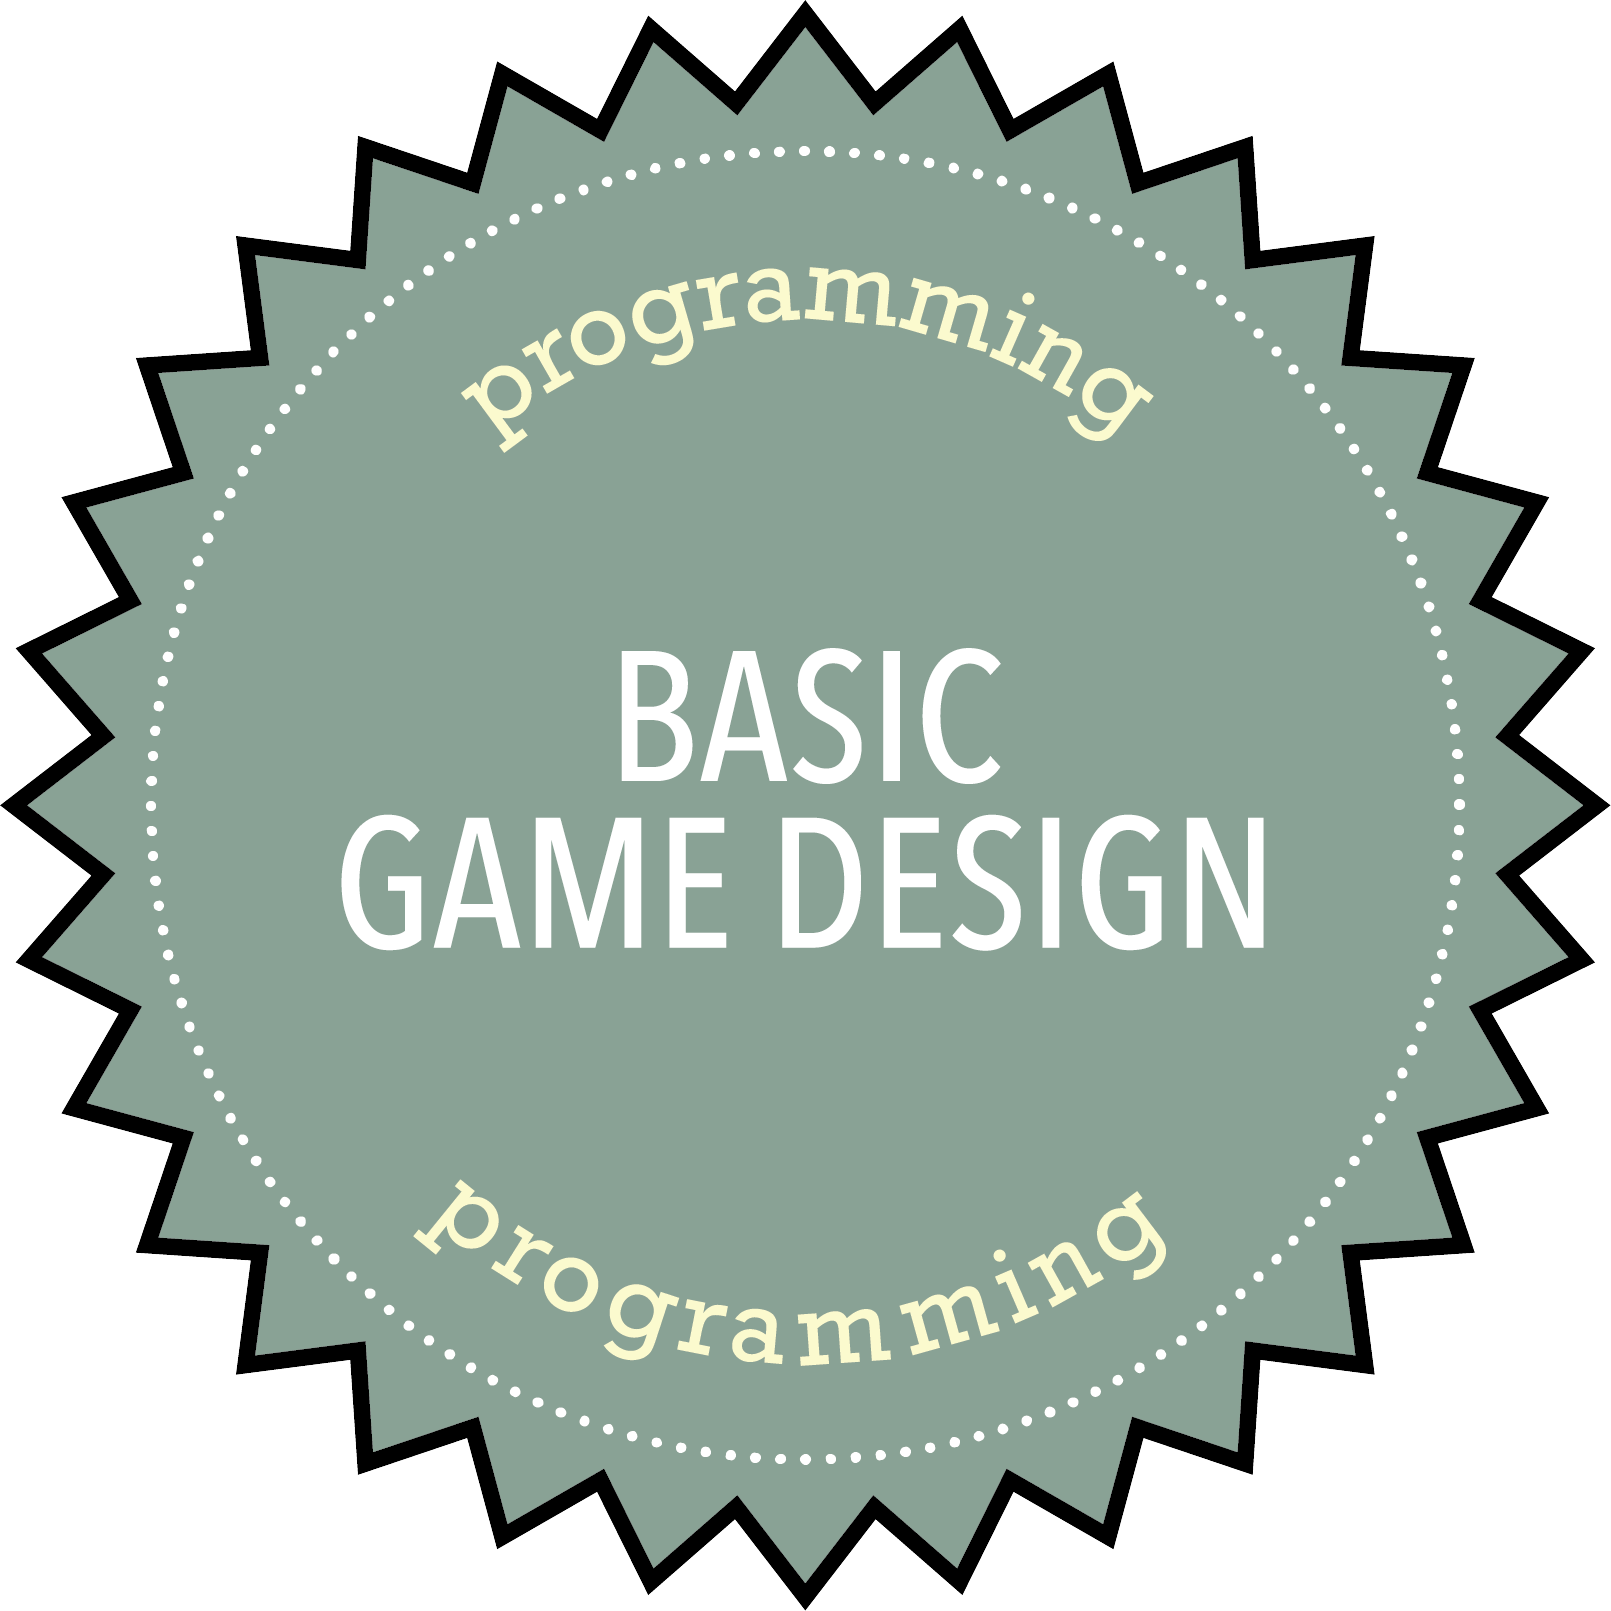 Programming: Basic Game Design